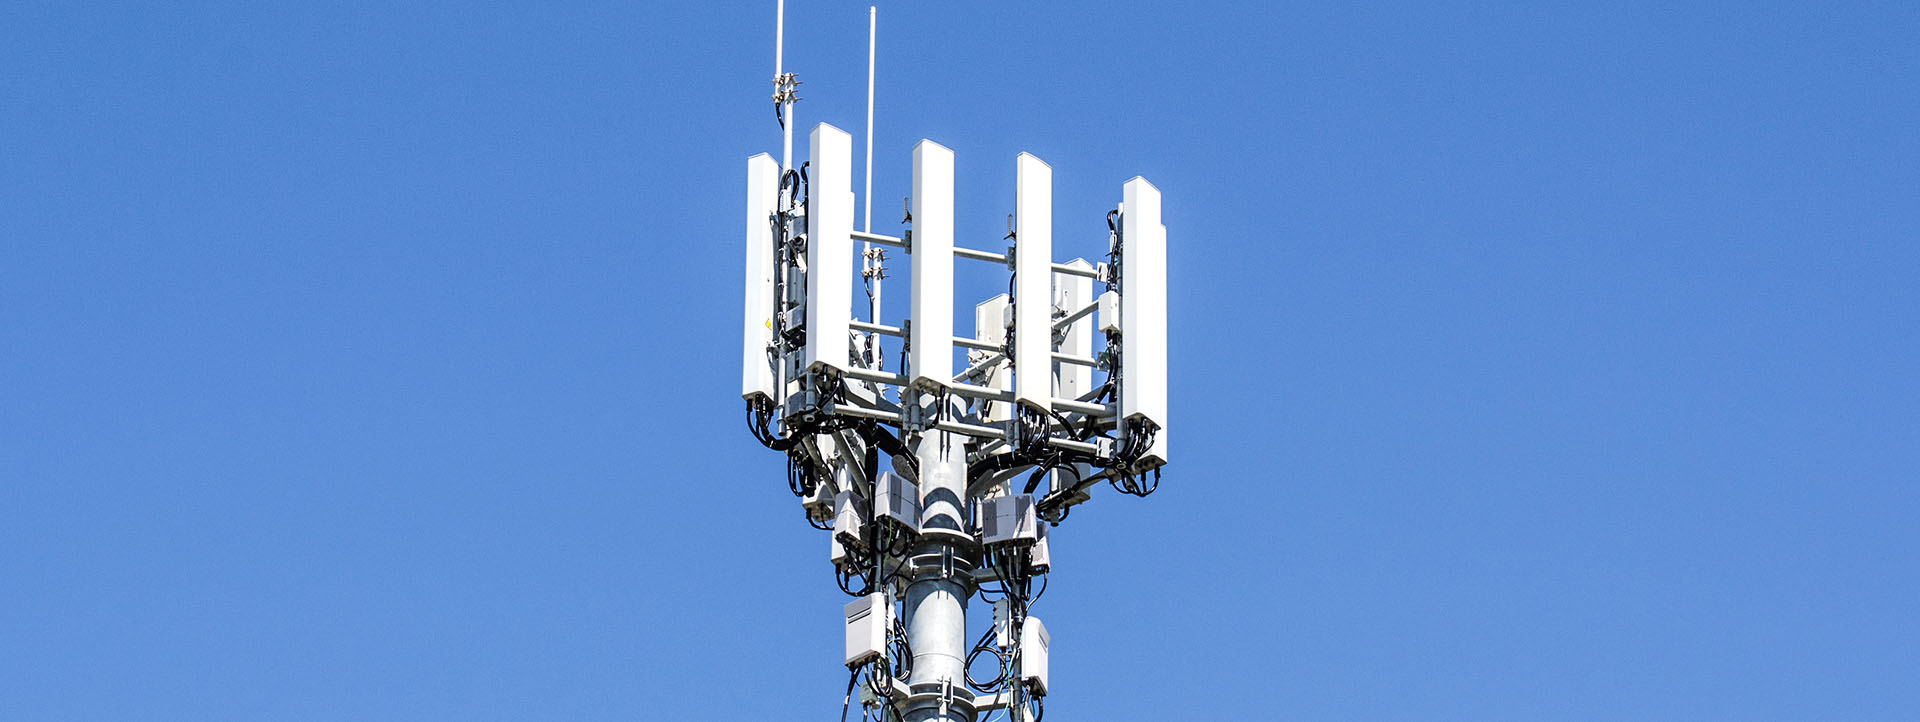 Ce que vous devez savoir sur les baux de sites antennes relais